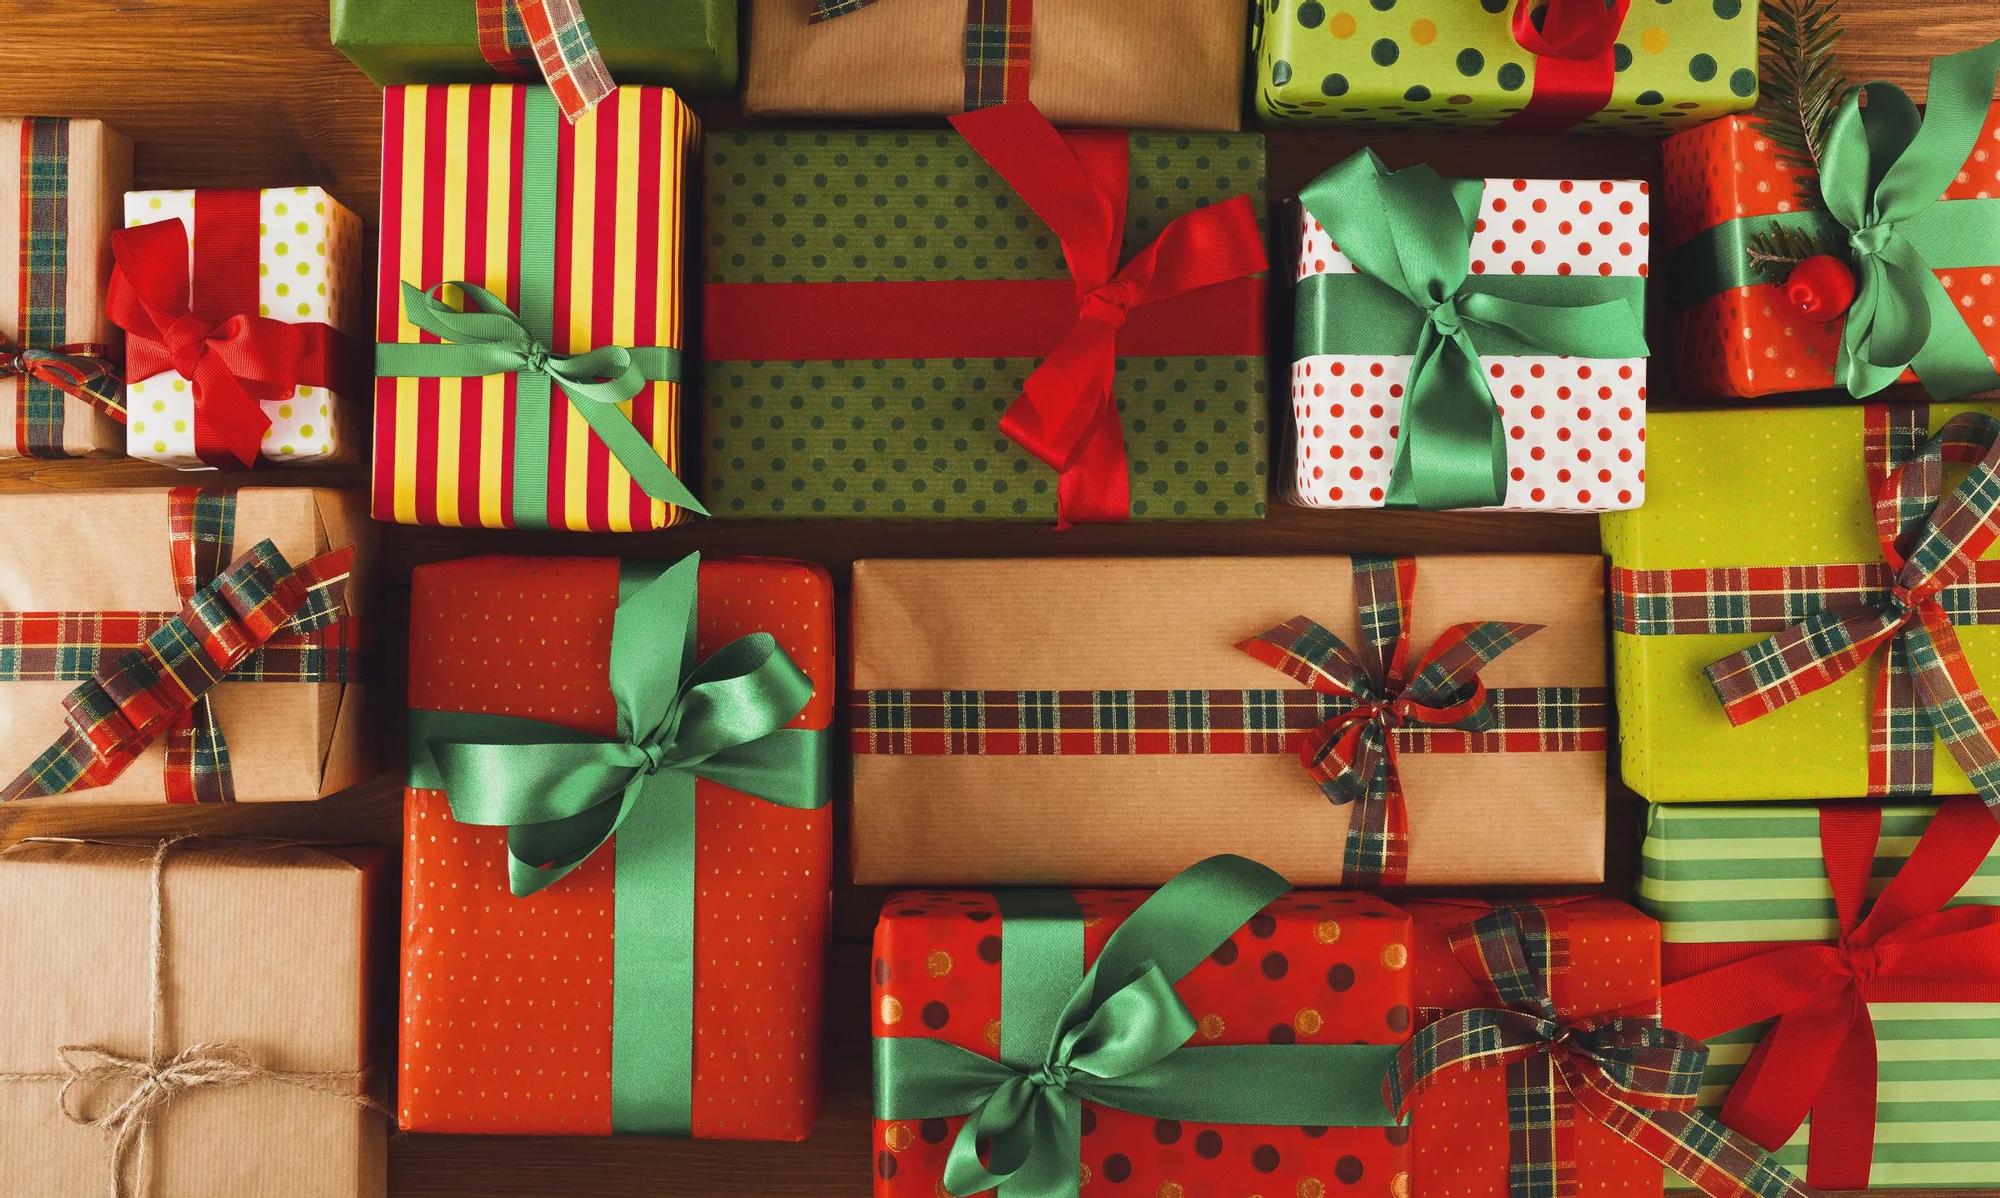 Cómo evitar el estrés que nos produce la compra de los regalos navideños